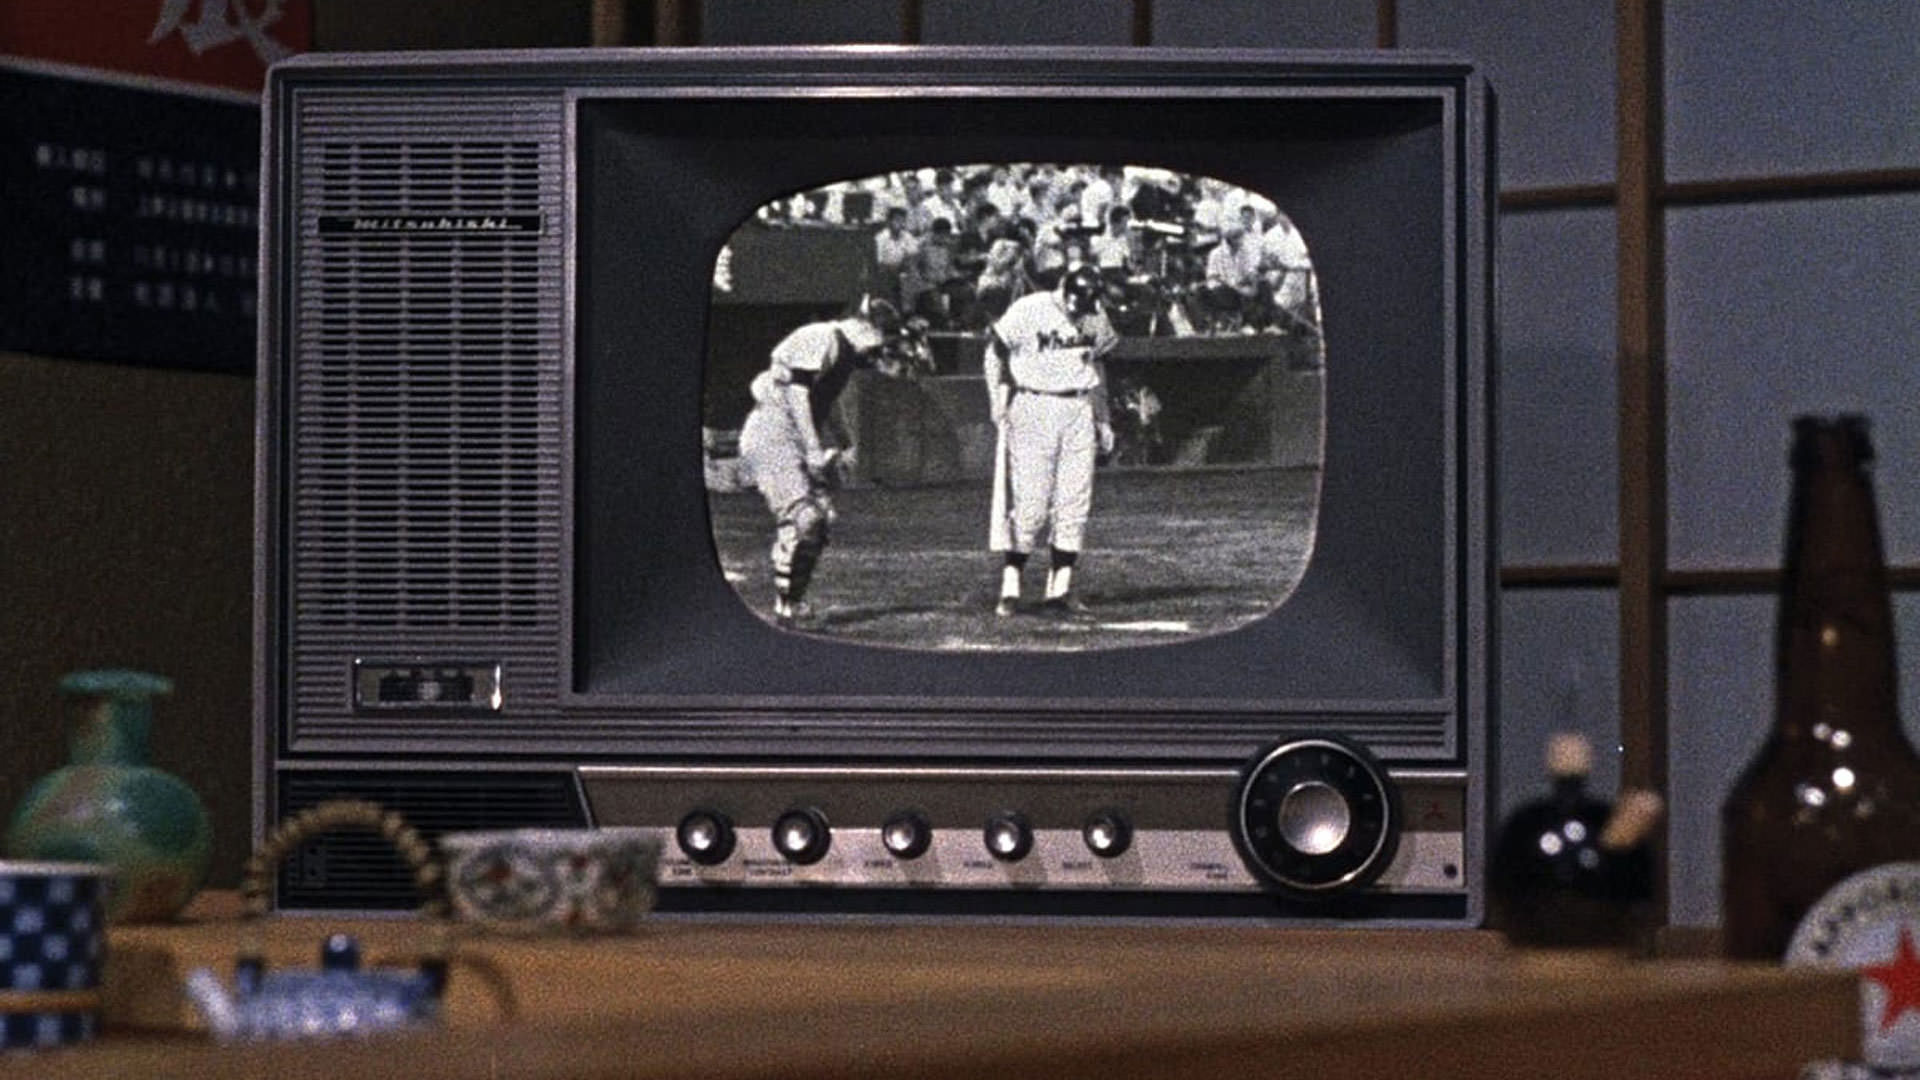 پخش زنده‌ی یک مسابقه‌ی بیسبال داخل یک تلویزیون در نمایی از فیلم یک بعدازظهر پاییزی به کارگردانی یاسوجیرو ازو